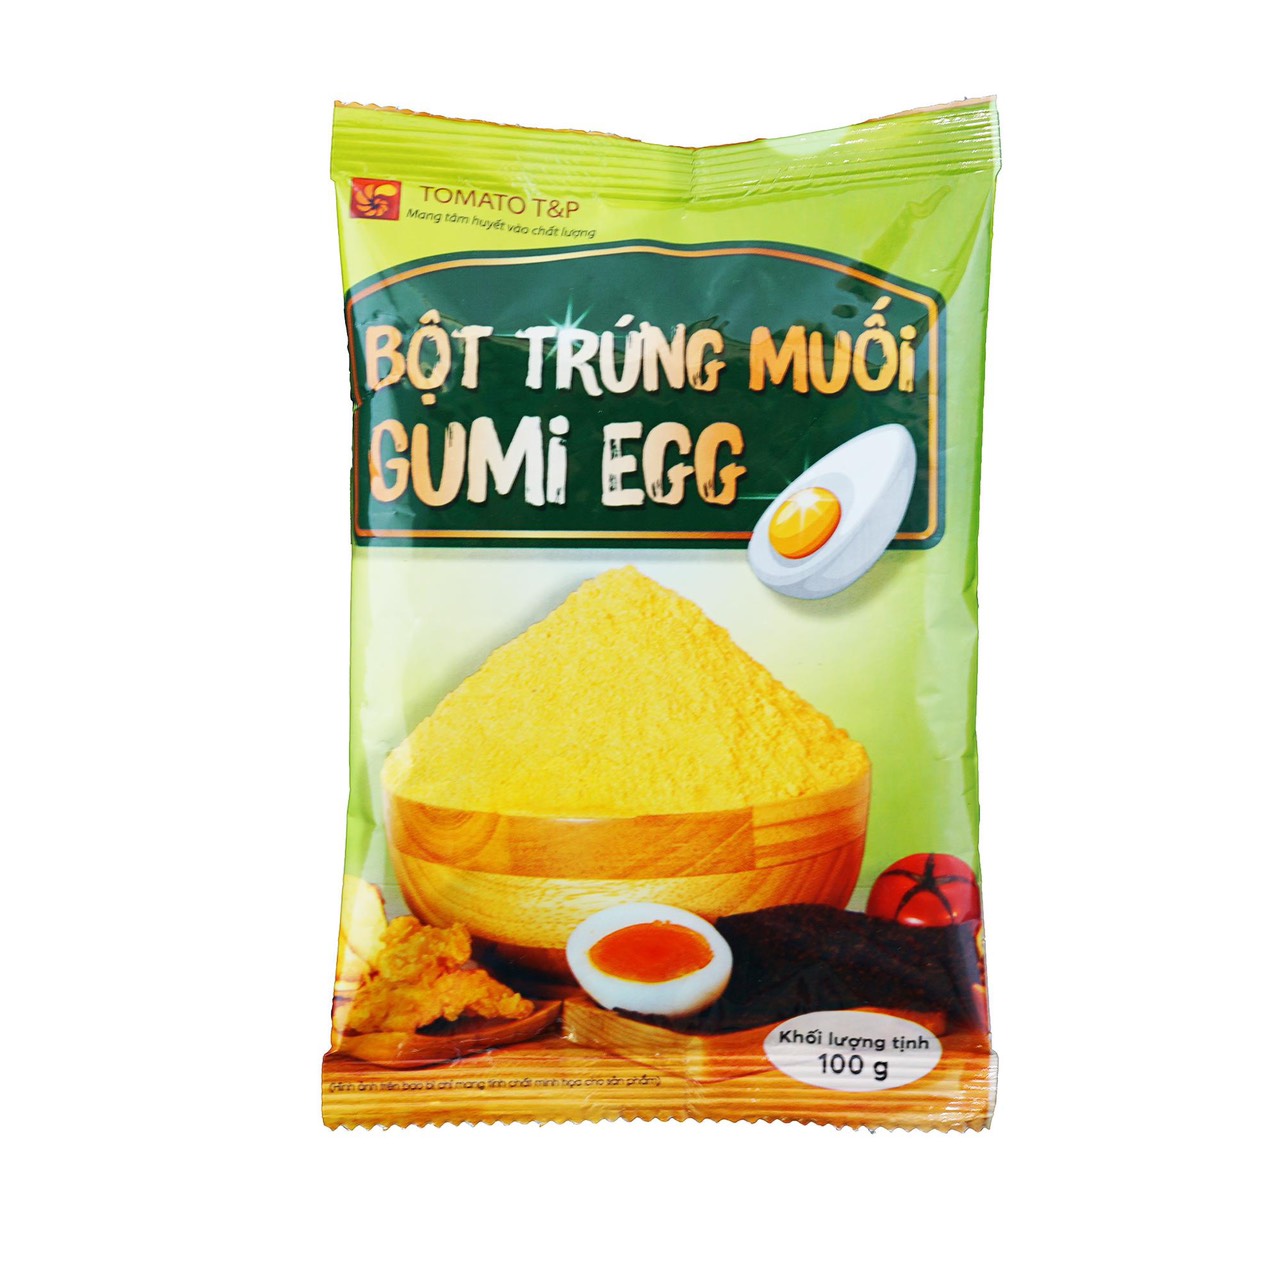 Bột trứng muối lắc Gumi Egg 100g